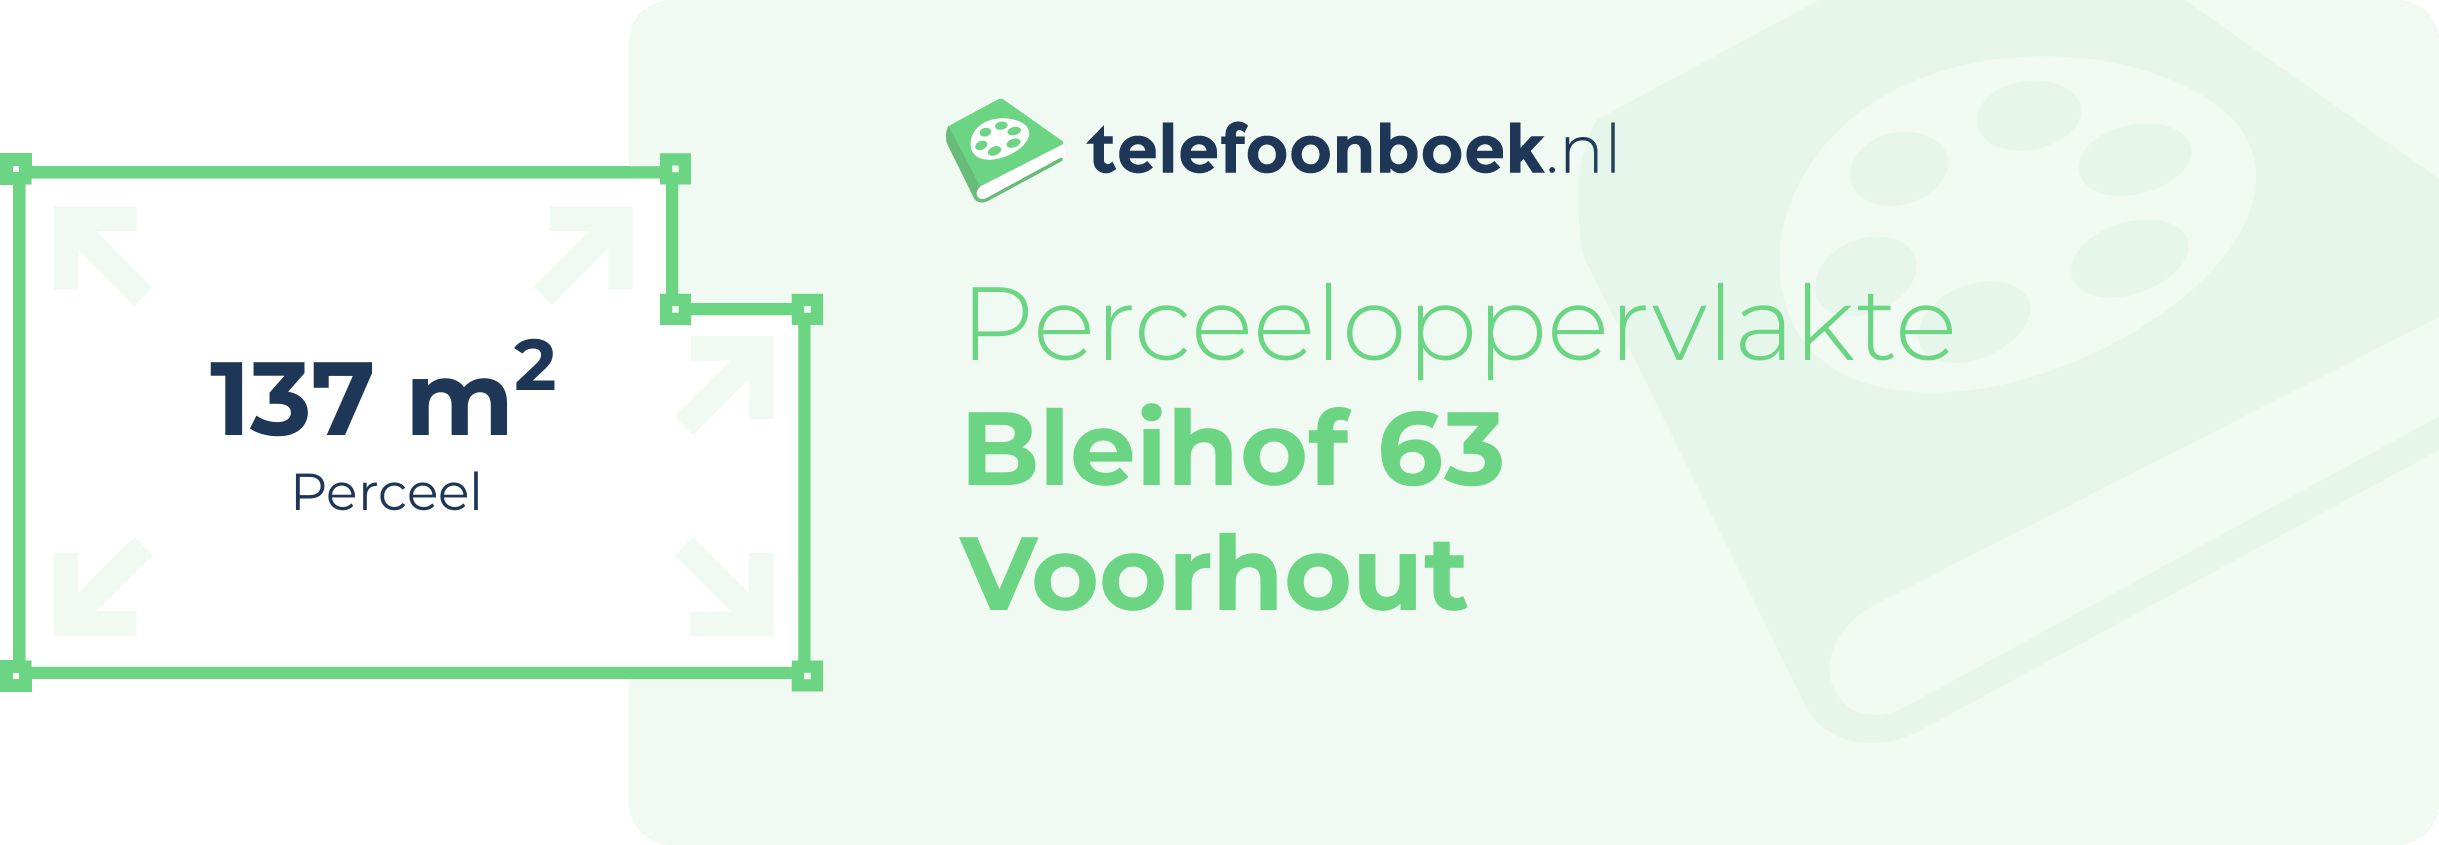 Perceeloppervlakte Bleihof 63 Voorhout